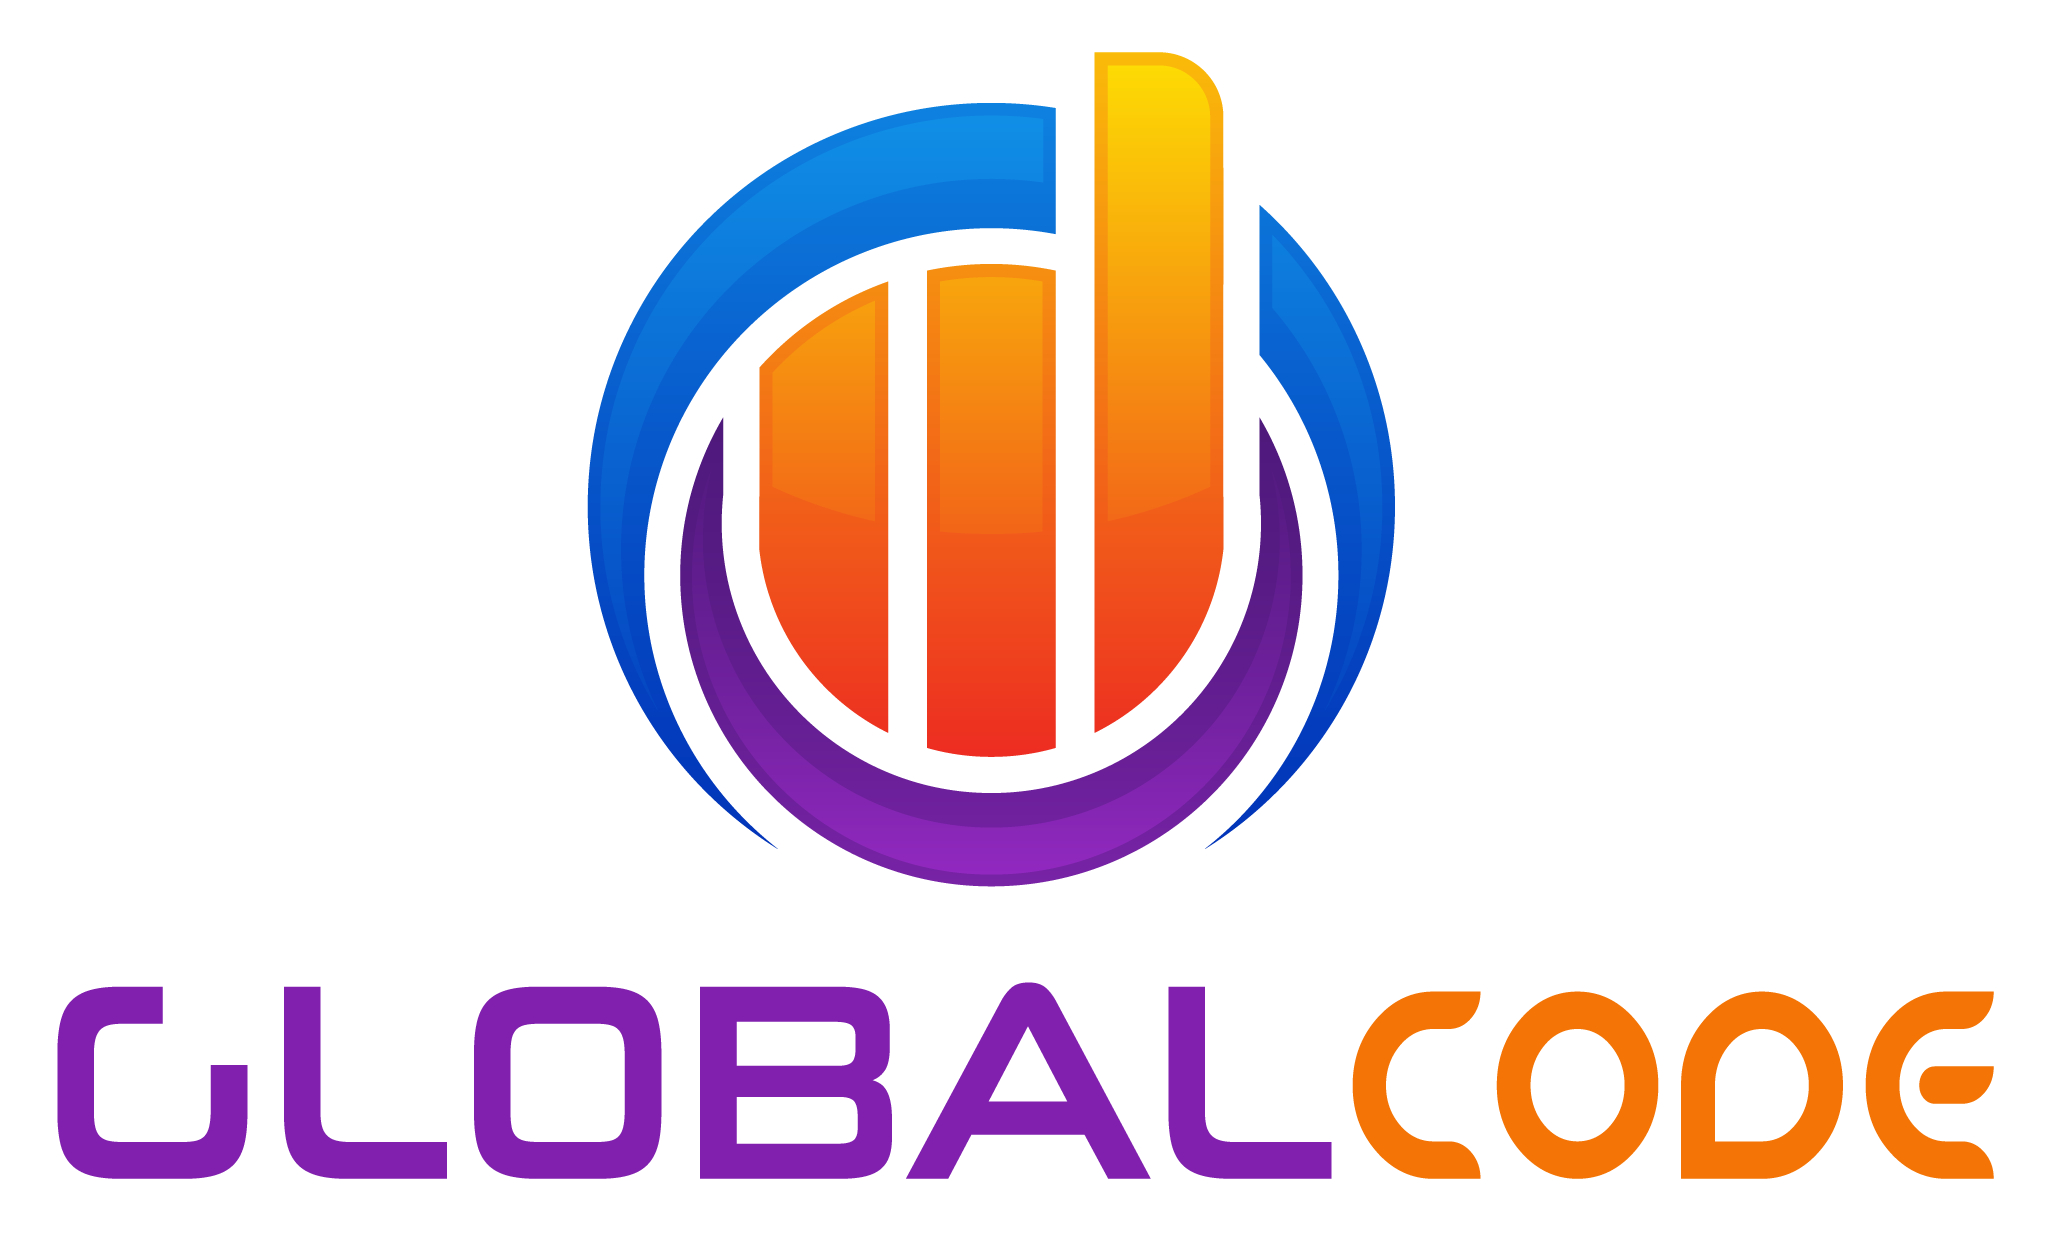 globalcode_logo_.jpg